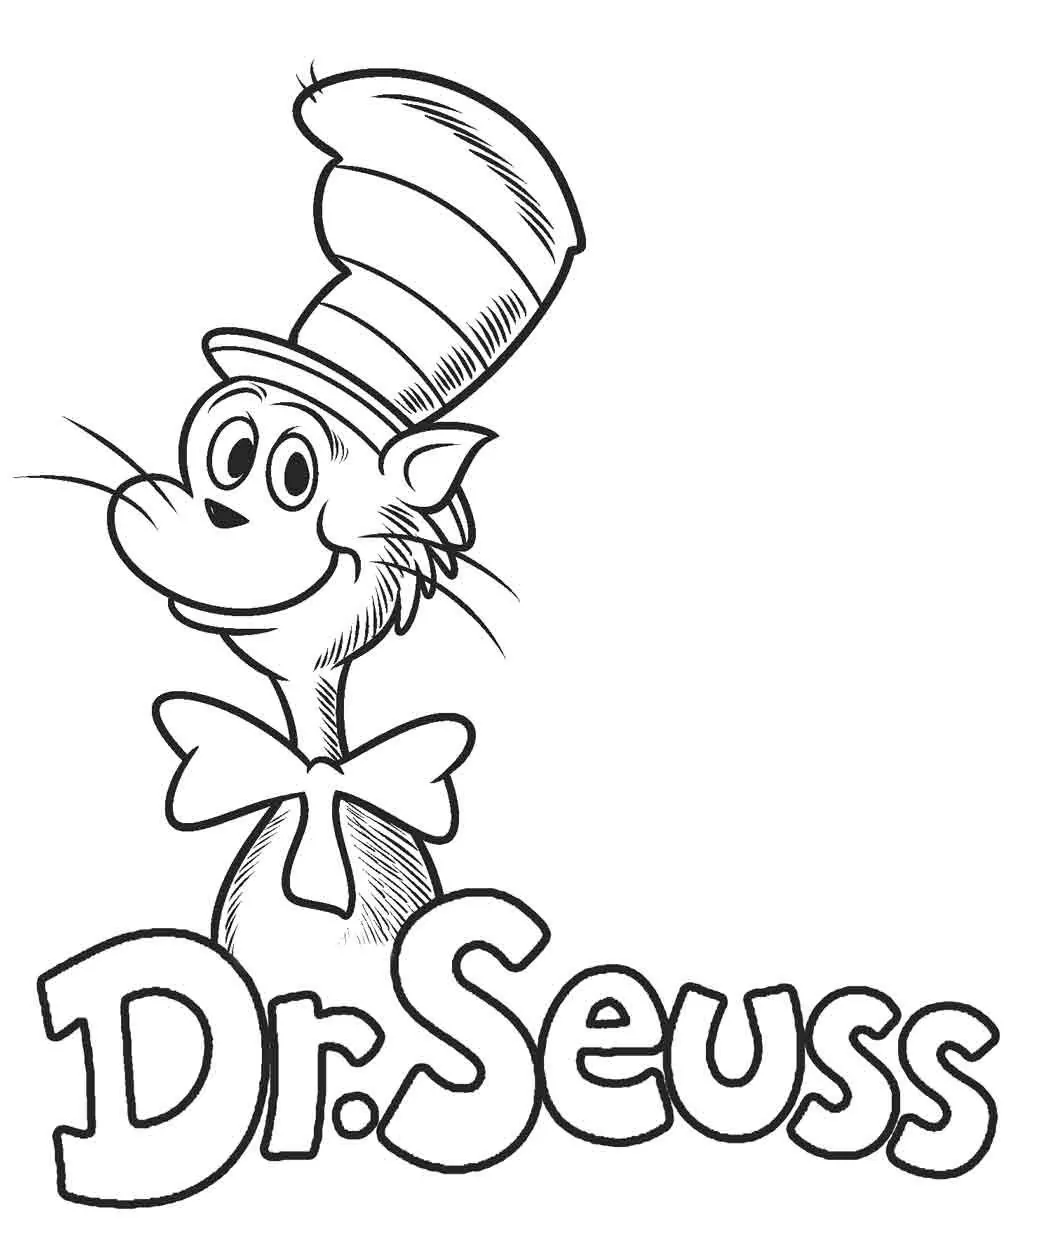 Dr. Seuss’ Charakter